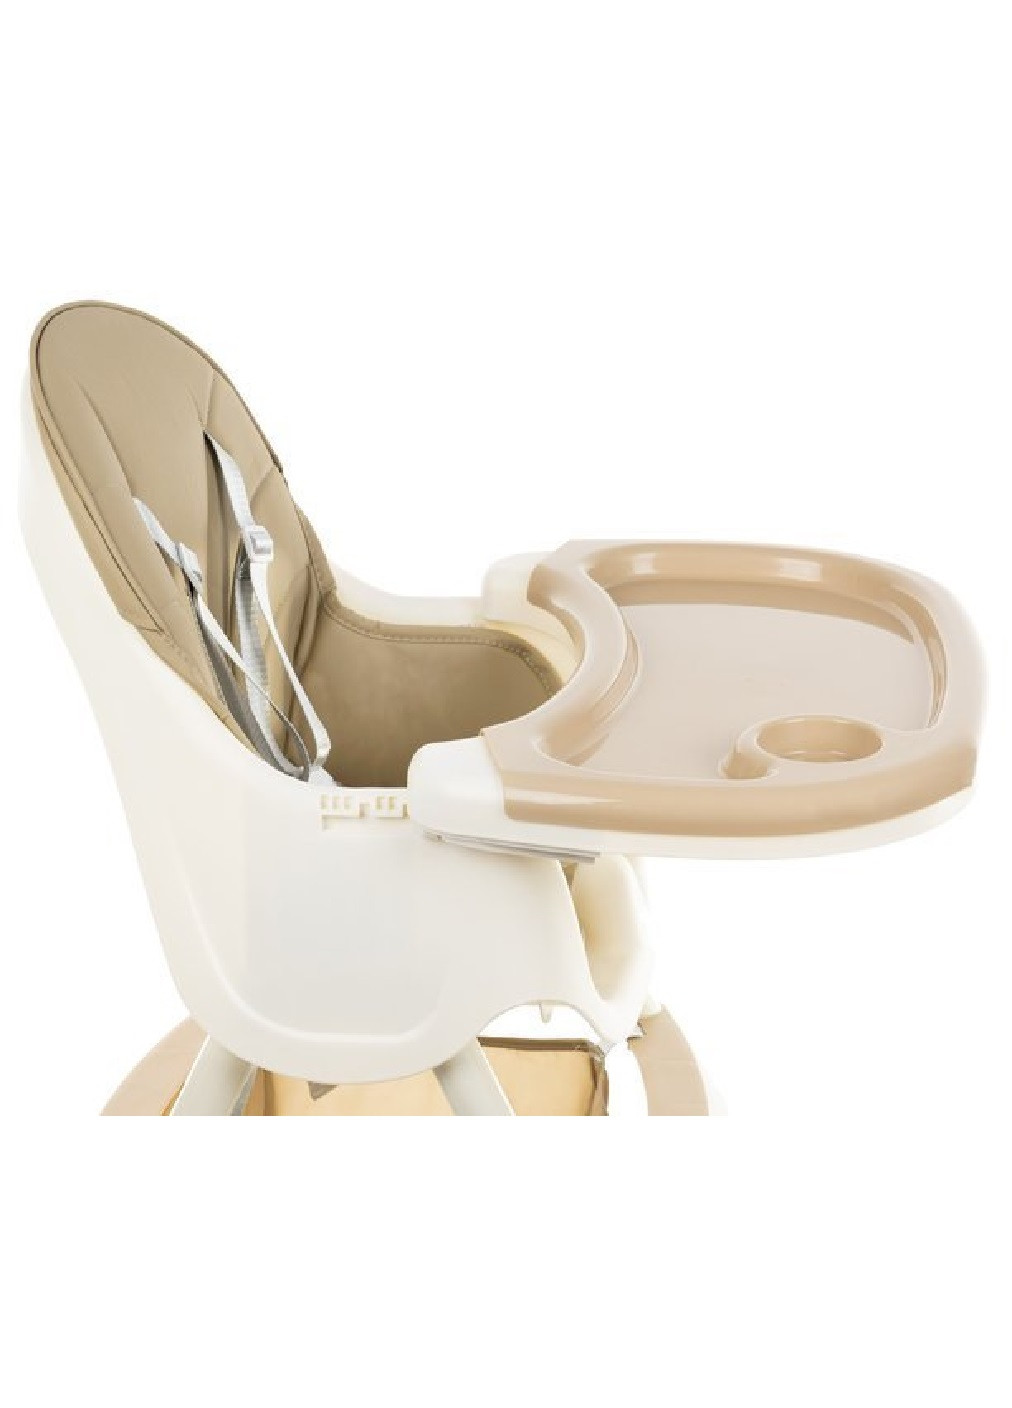 Дитяче крісло розбірне стільчик компактне для годування дітей малюків 3 в 1 з підносом (474761-Prob) Бежеве Unbranded (259644296)